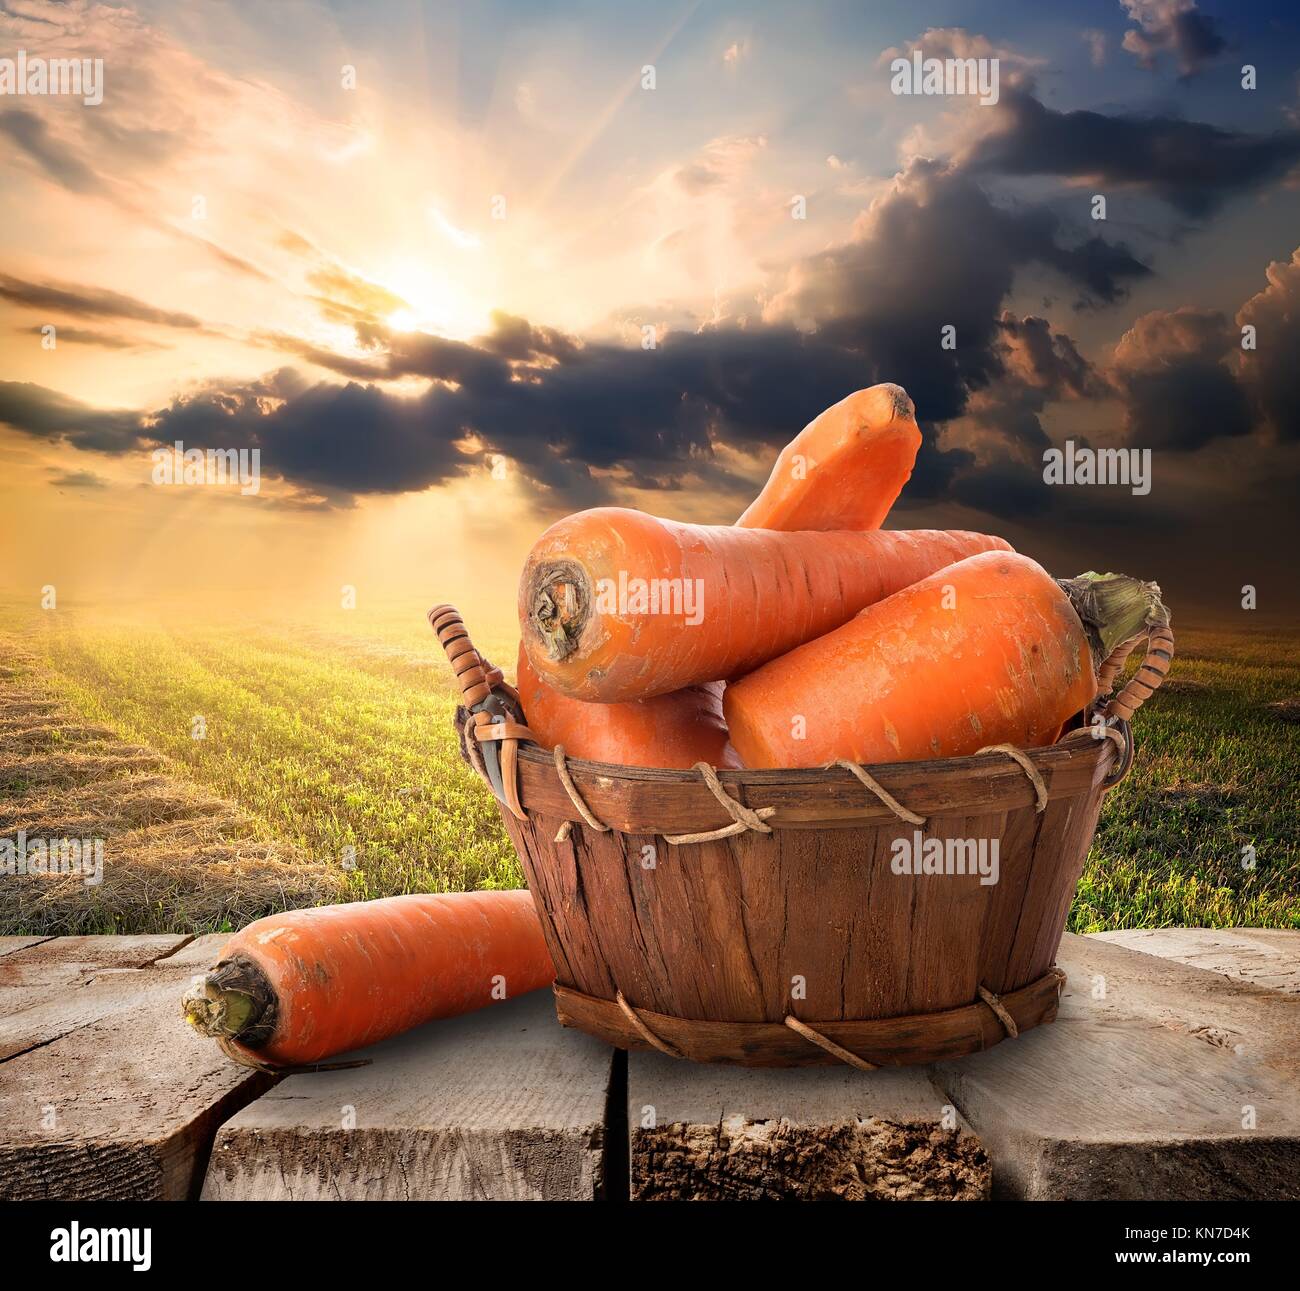 Karotte in einem Korb auf den Tisch und der Landschaft. Stockfoto